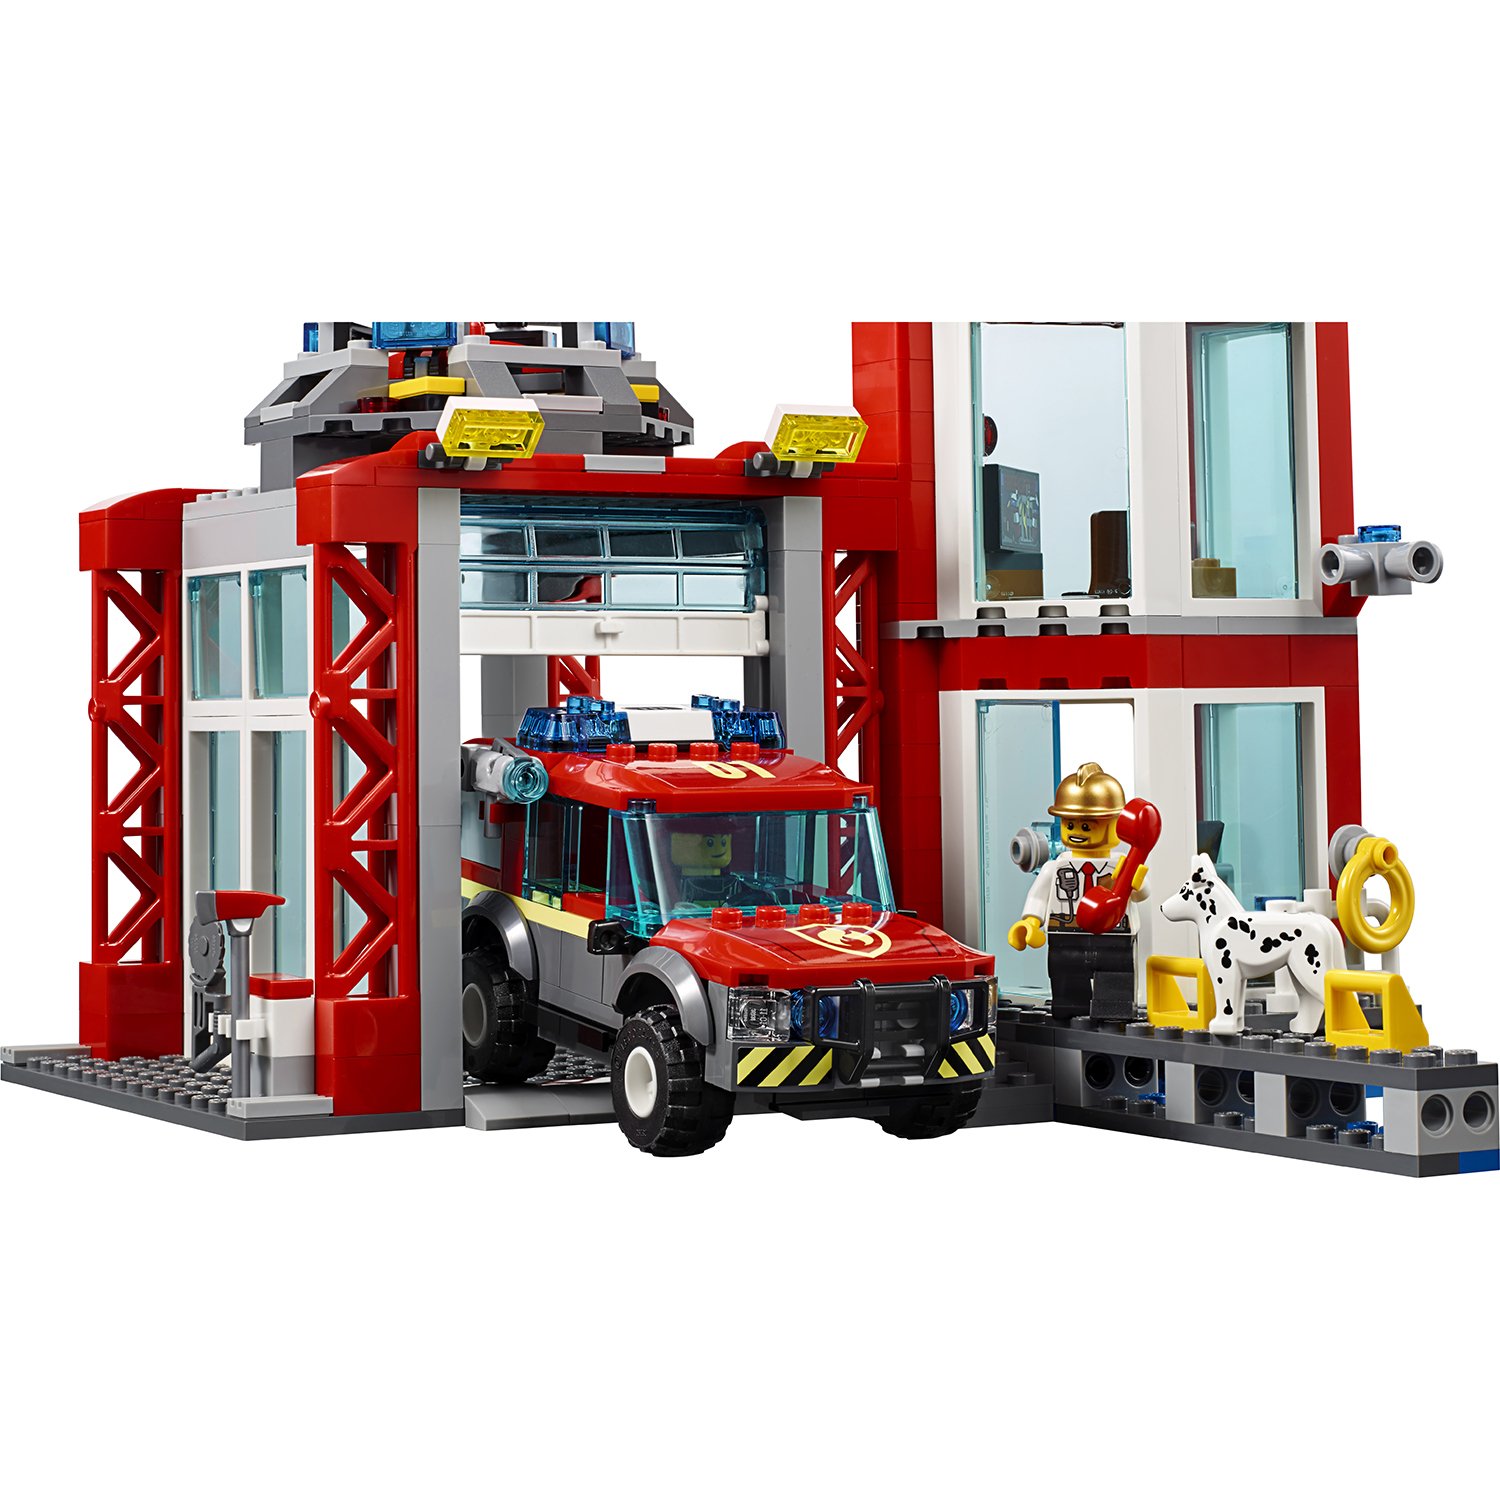 Lego City 60215 Пожарное депо